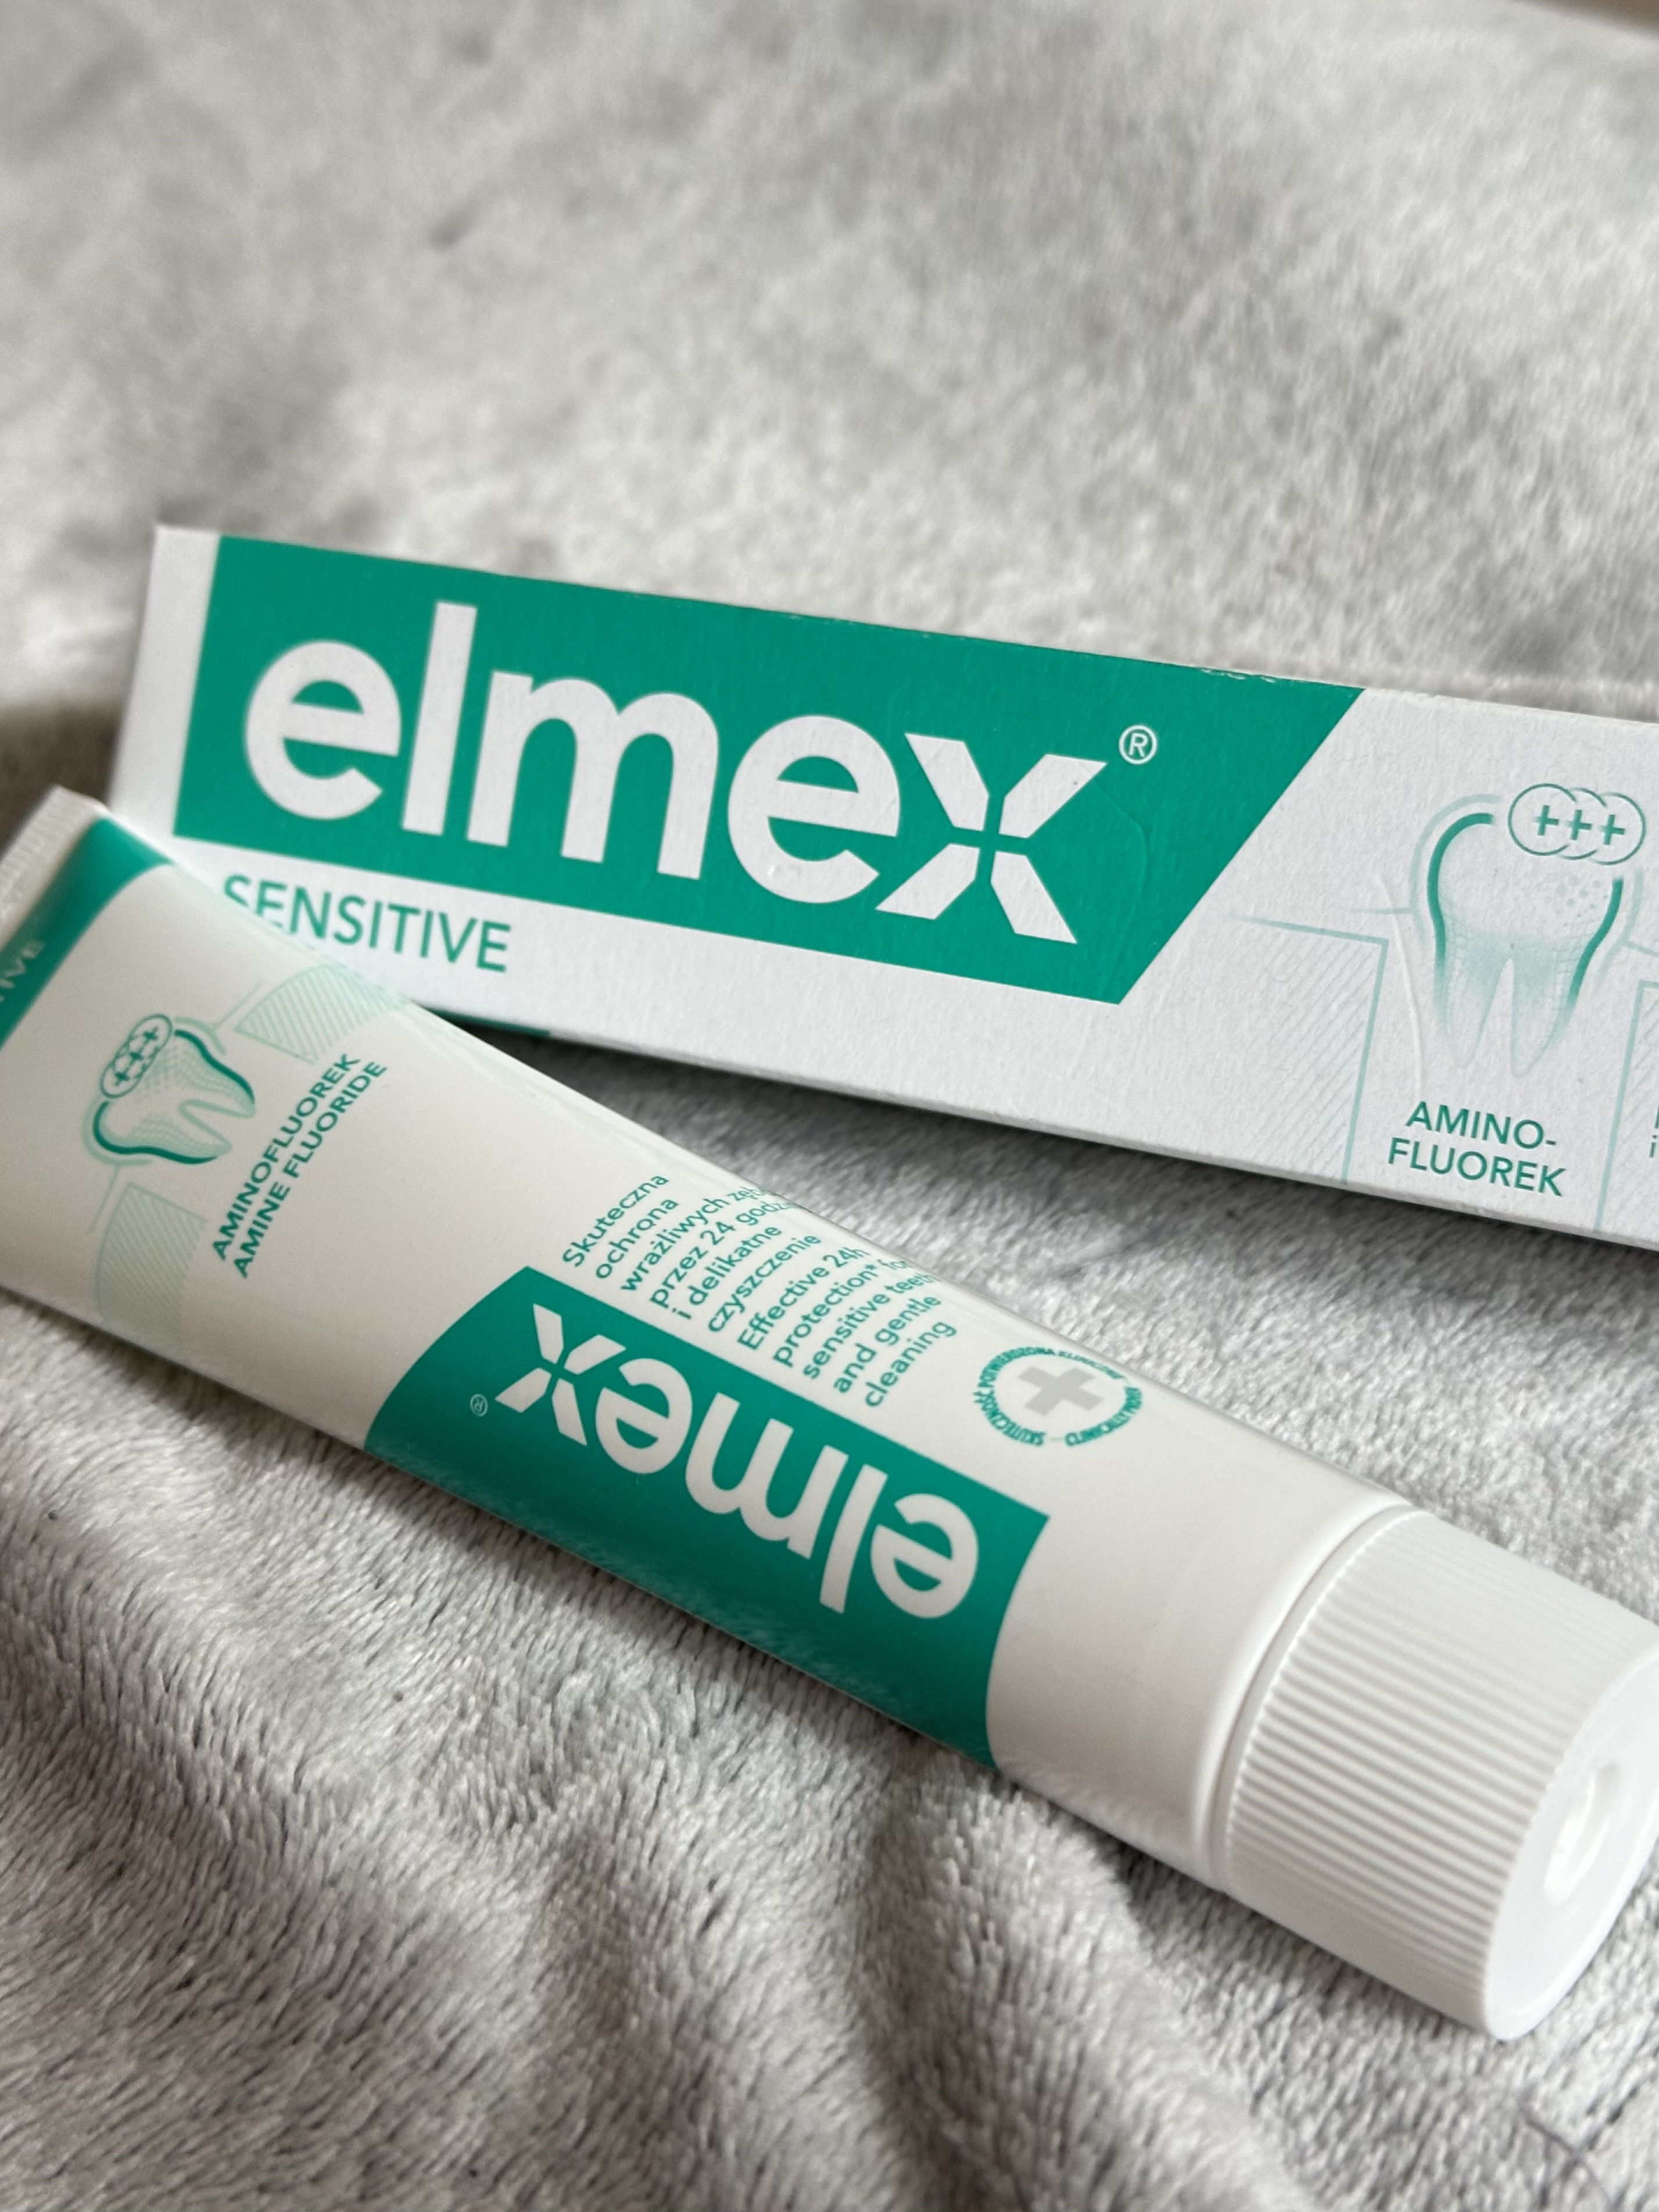 Зубна паста "Elmex" для чутливих зубів з амінофторидом